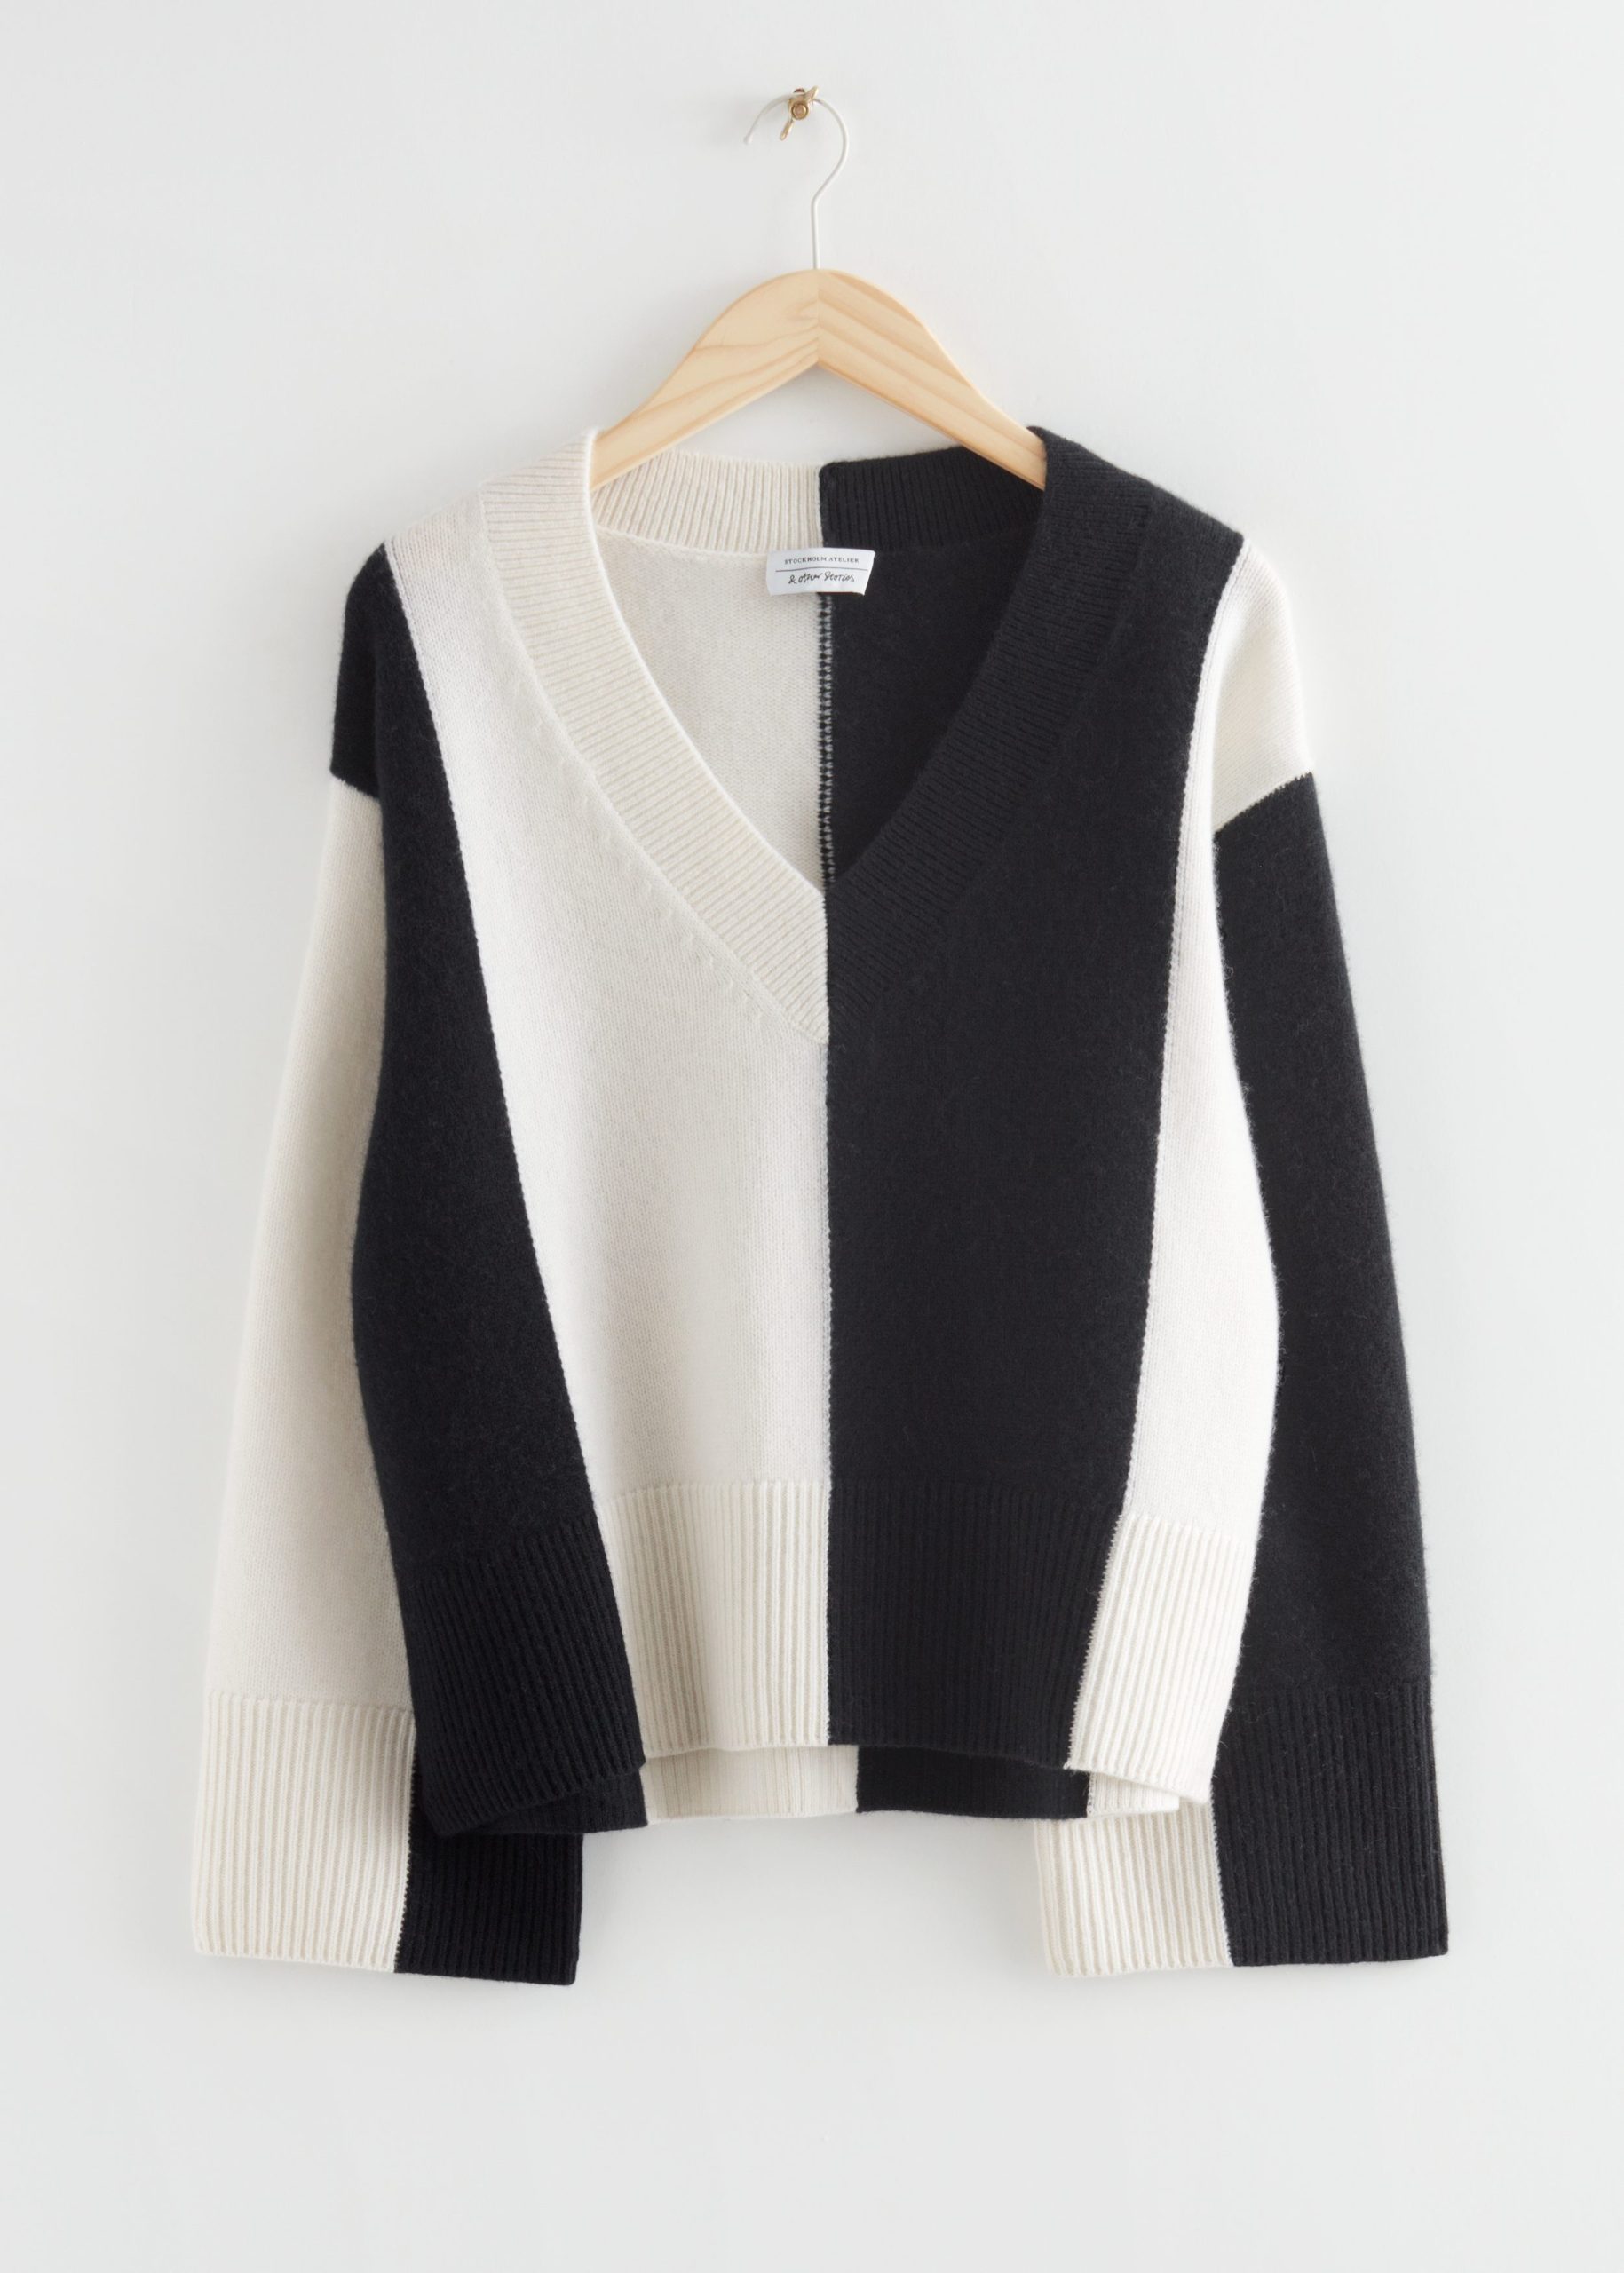 & Other Stories Oversized-Pullover aus Lammwolle mit V-Ausschnitt Schwarz/Weiß in Größe S. Farbe: Black and white